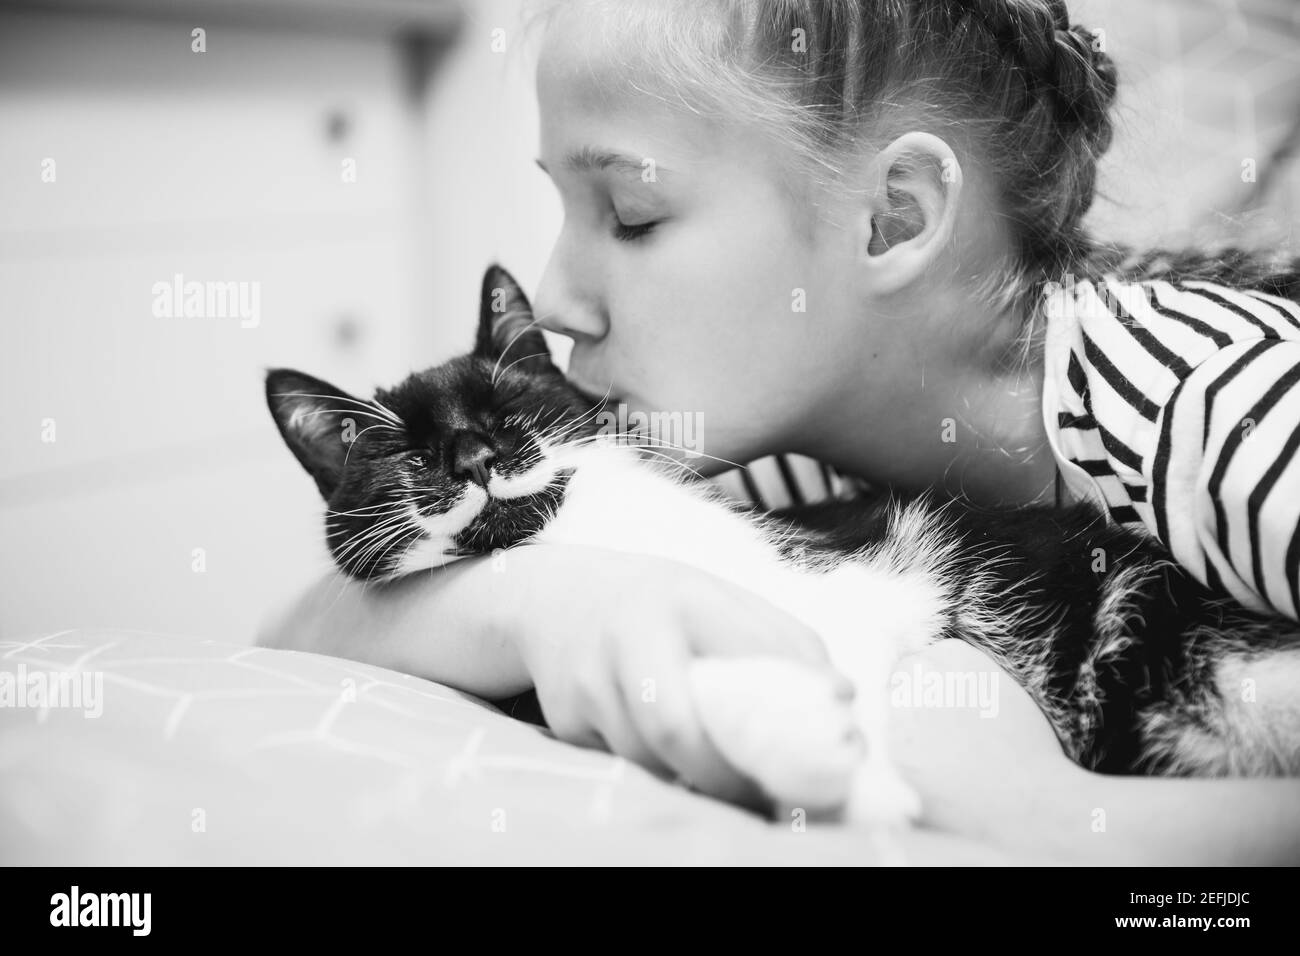 Ein Mädchen umarmt und küsst eine schwarze Katze, die ihre Augen vor Freude geschlossen hat. Stockfoto